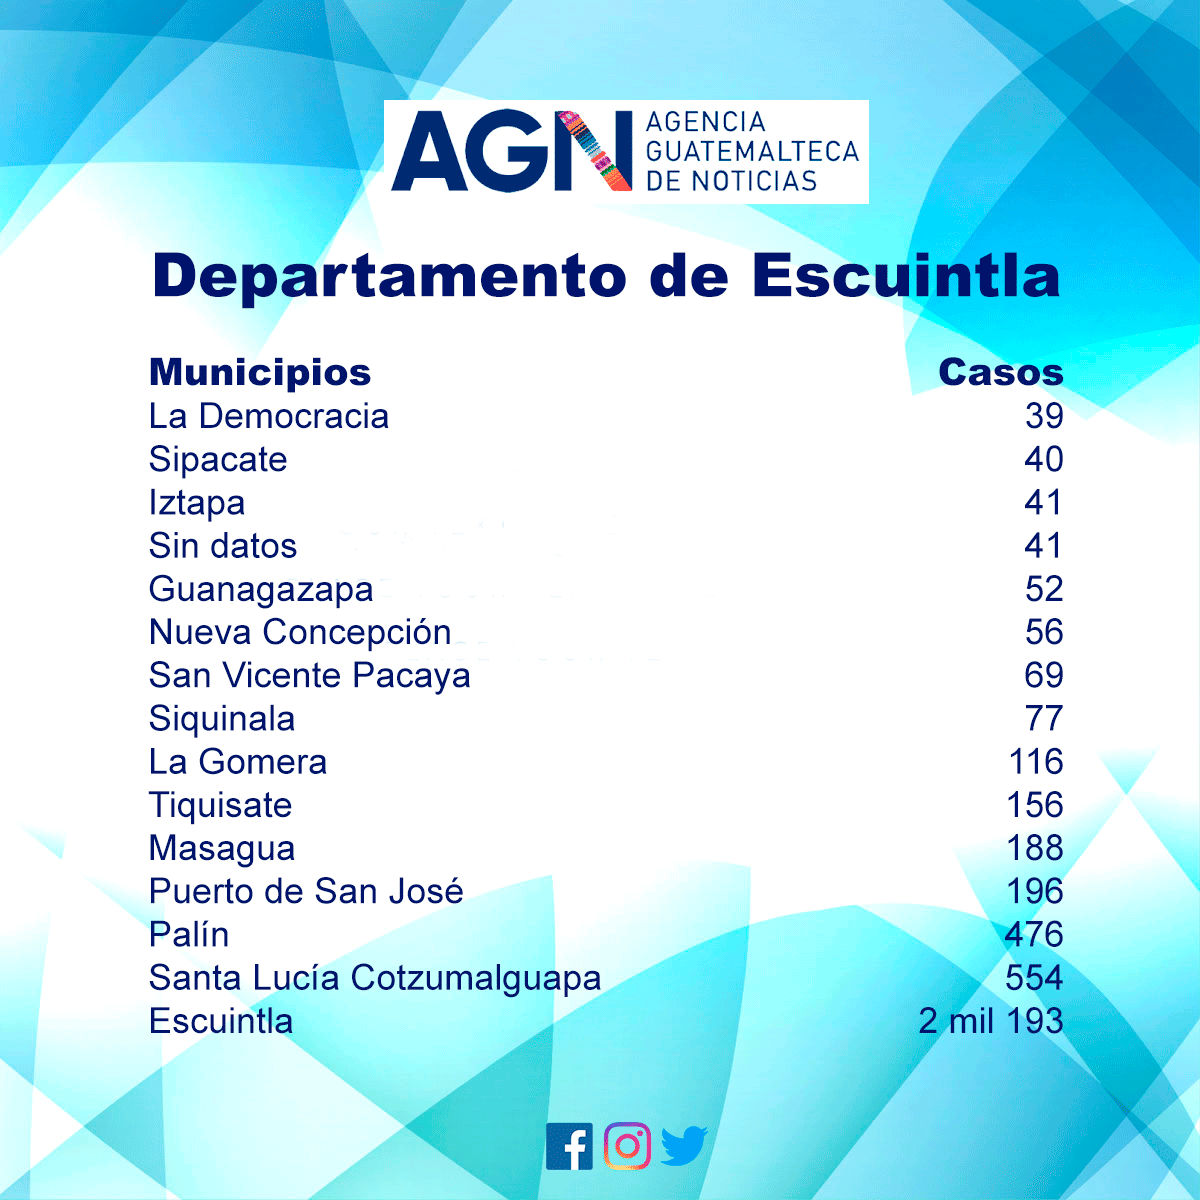 El departamento de Escuintla y los casos registrados en sus municipios.